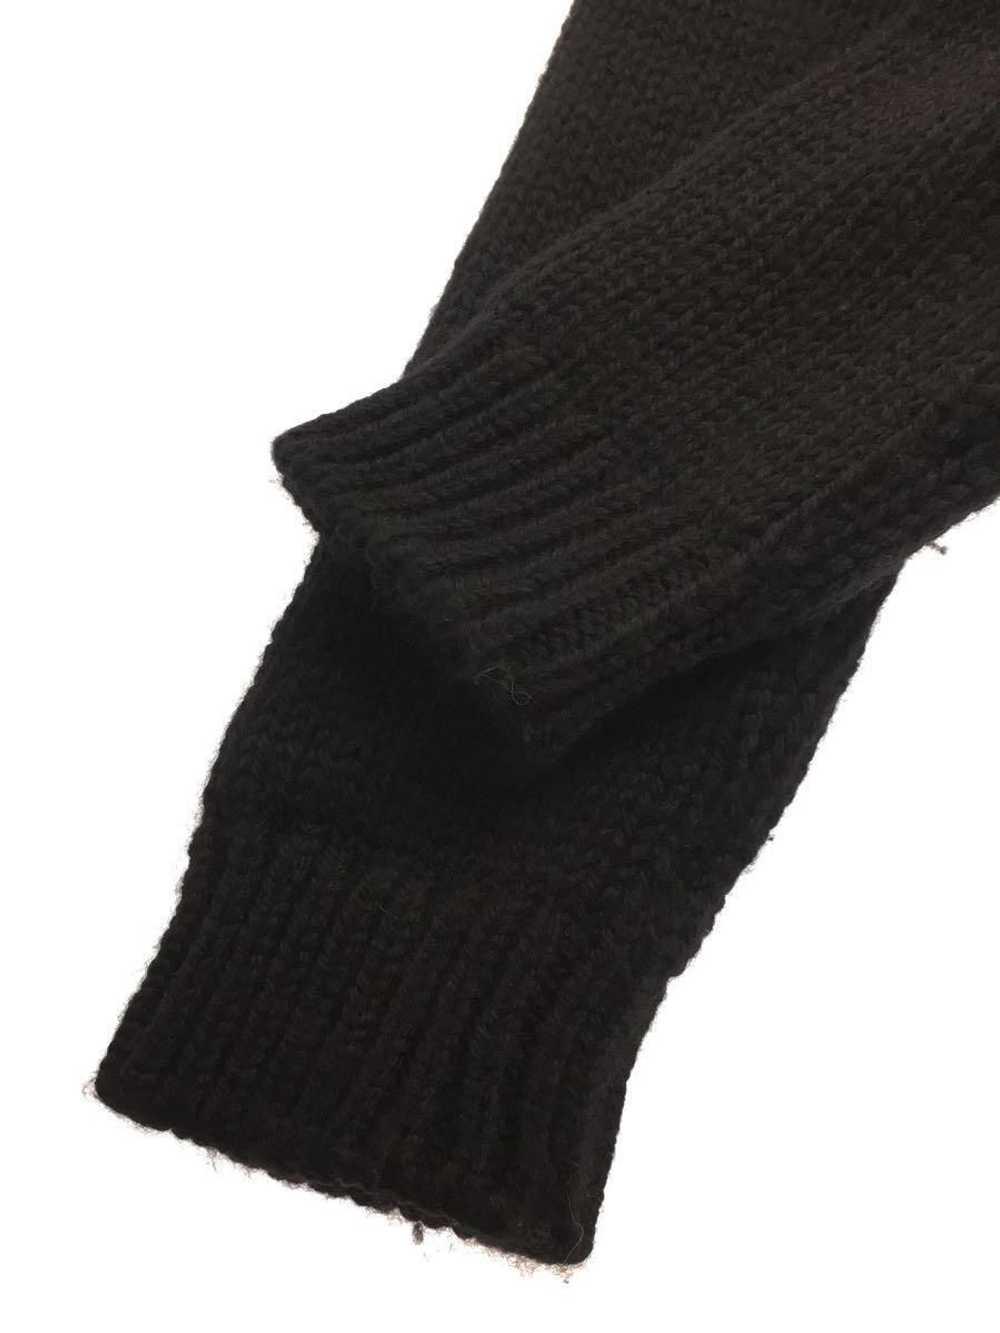 Marni AW21 Crochet Block Knit Sweater - image 4